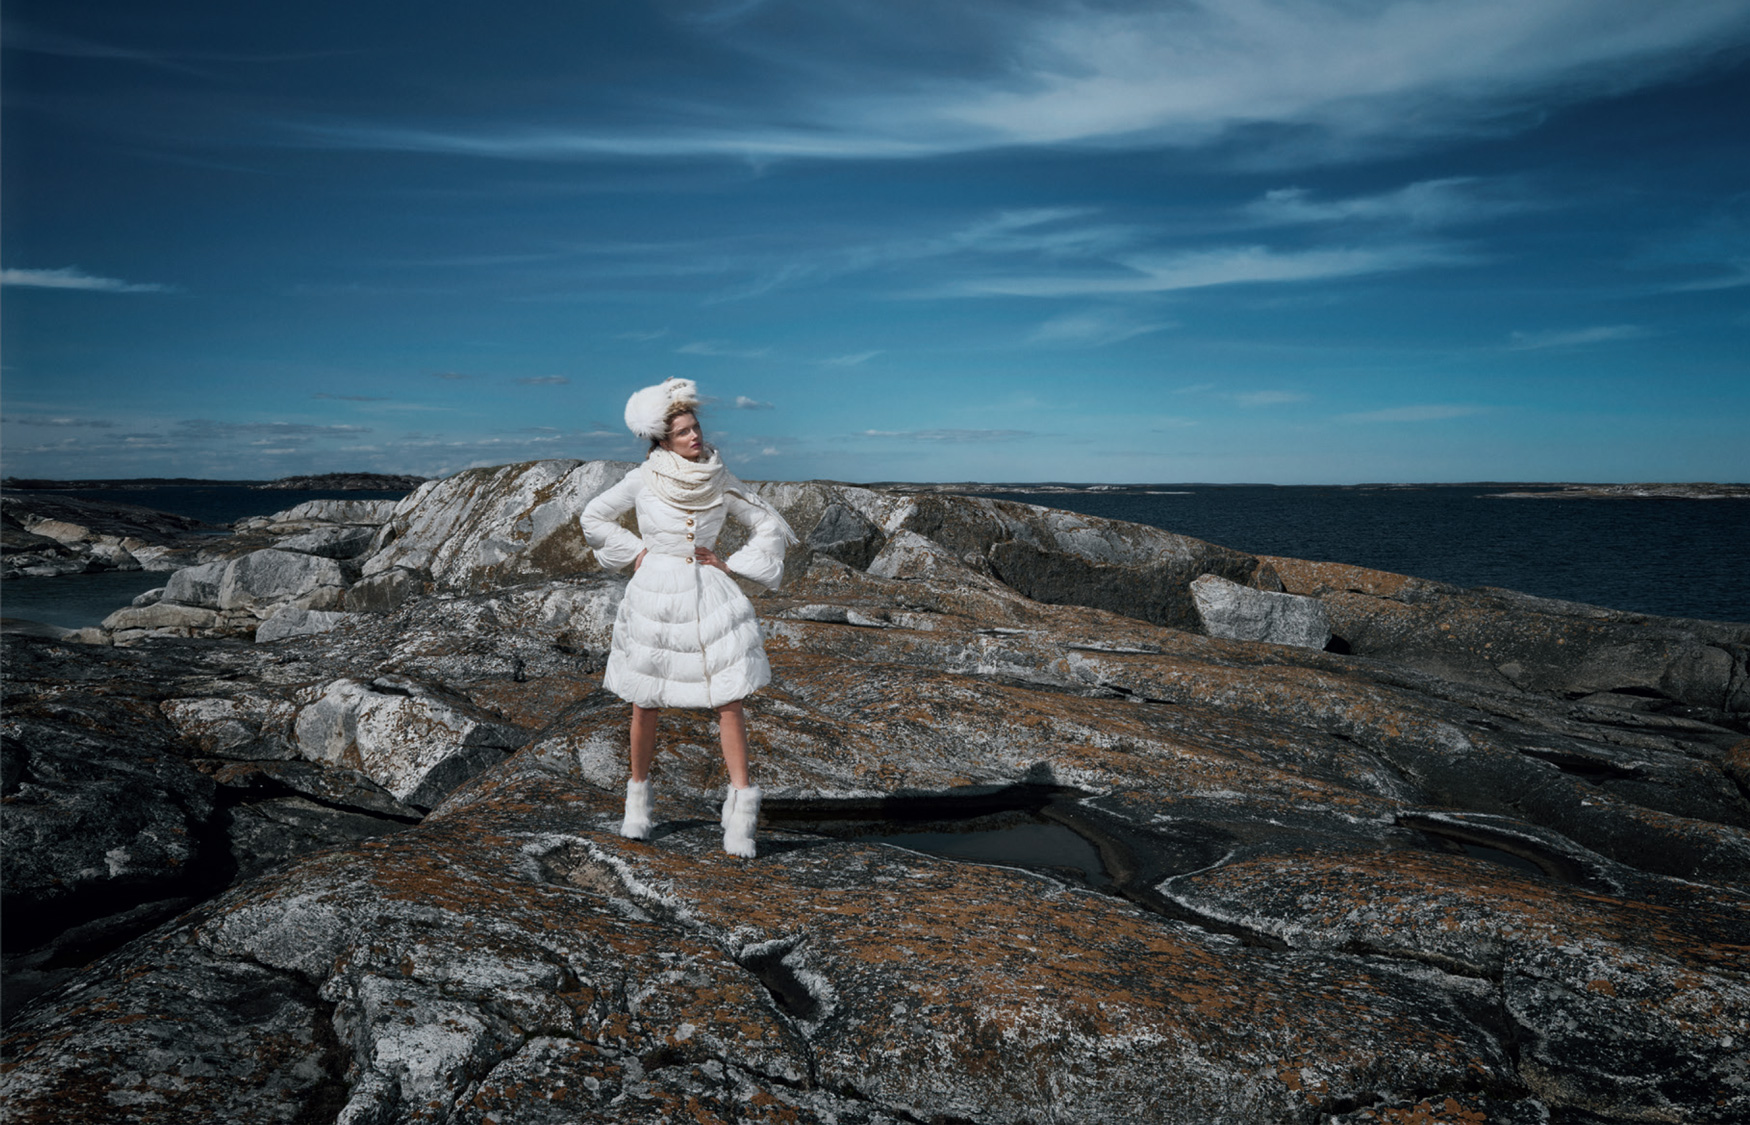 Giovanna-Battaglia-Vogue-Japan-The-Nordic-Queen-October-2015-Emma-Summerton-4.jpg